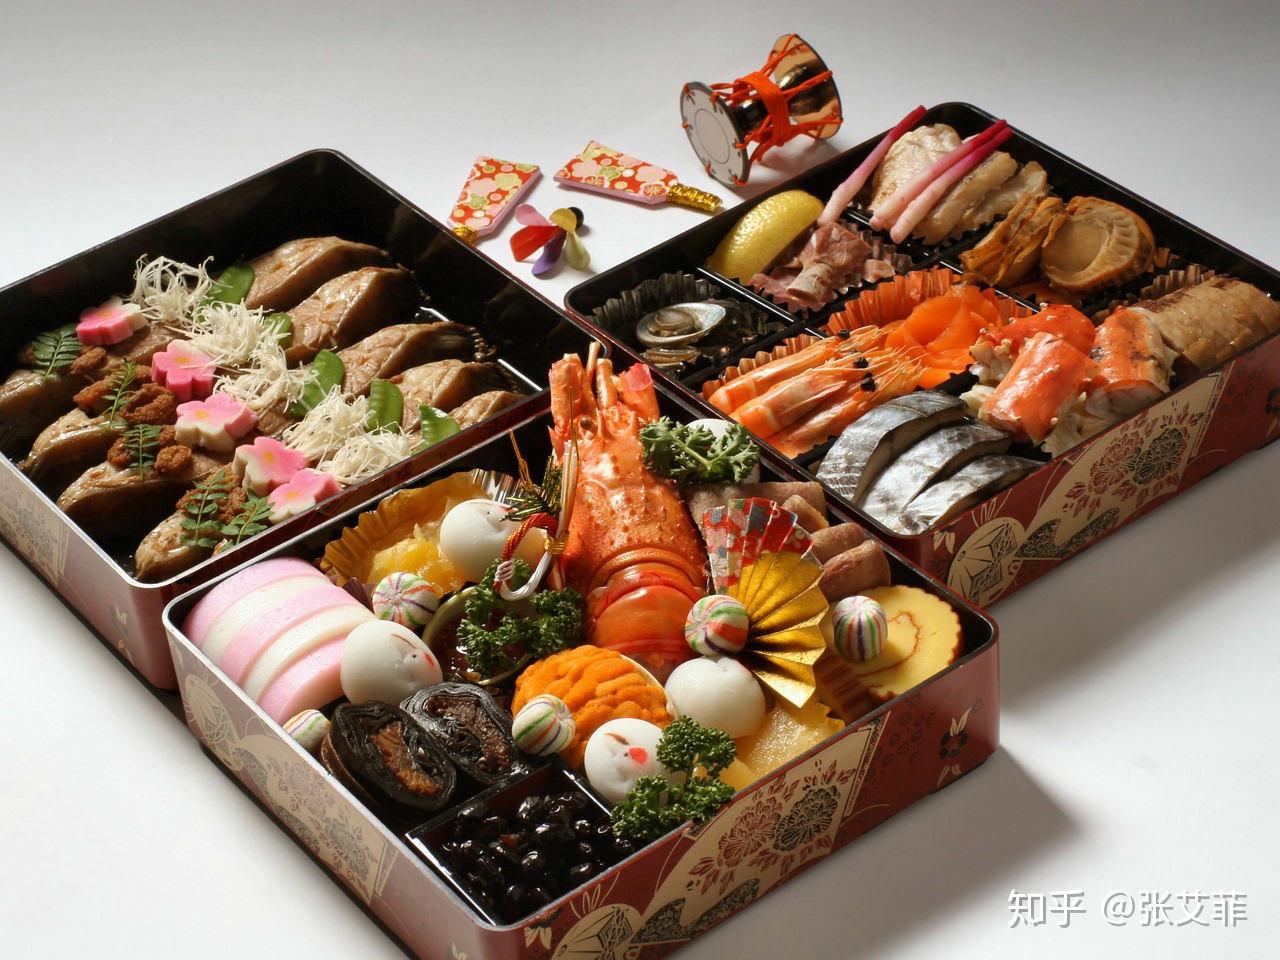 日本饮食注重清谈和食物原味，为何日本人又喜食油炸食品？ - 知乎